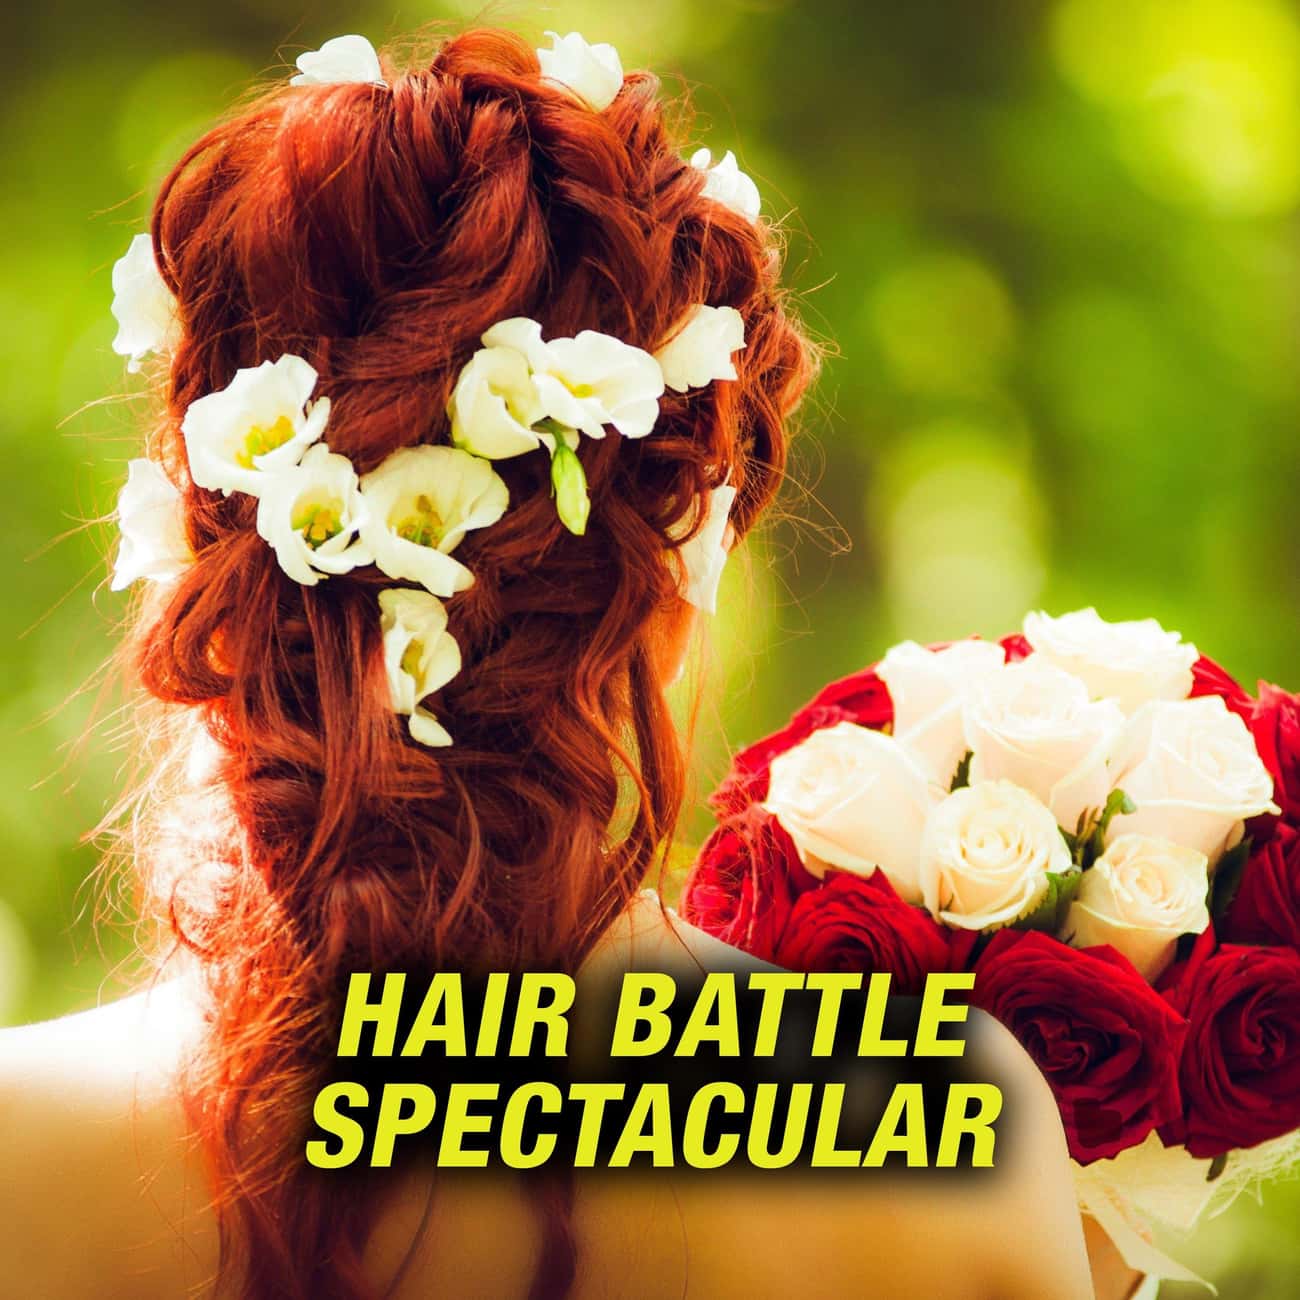 Hair Battle Spectacular